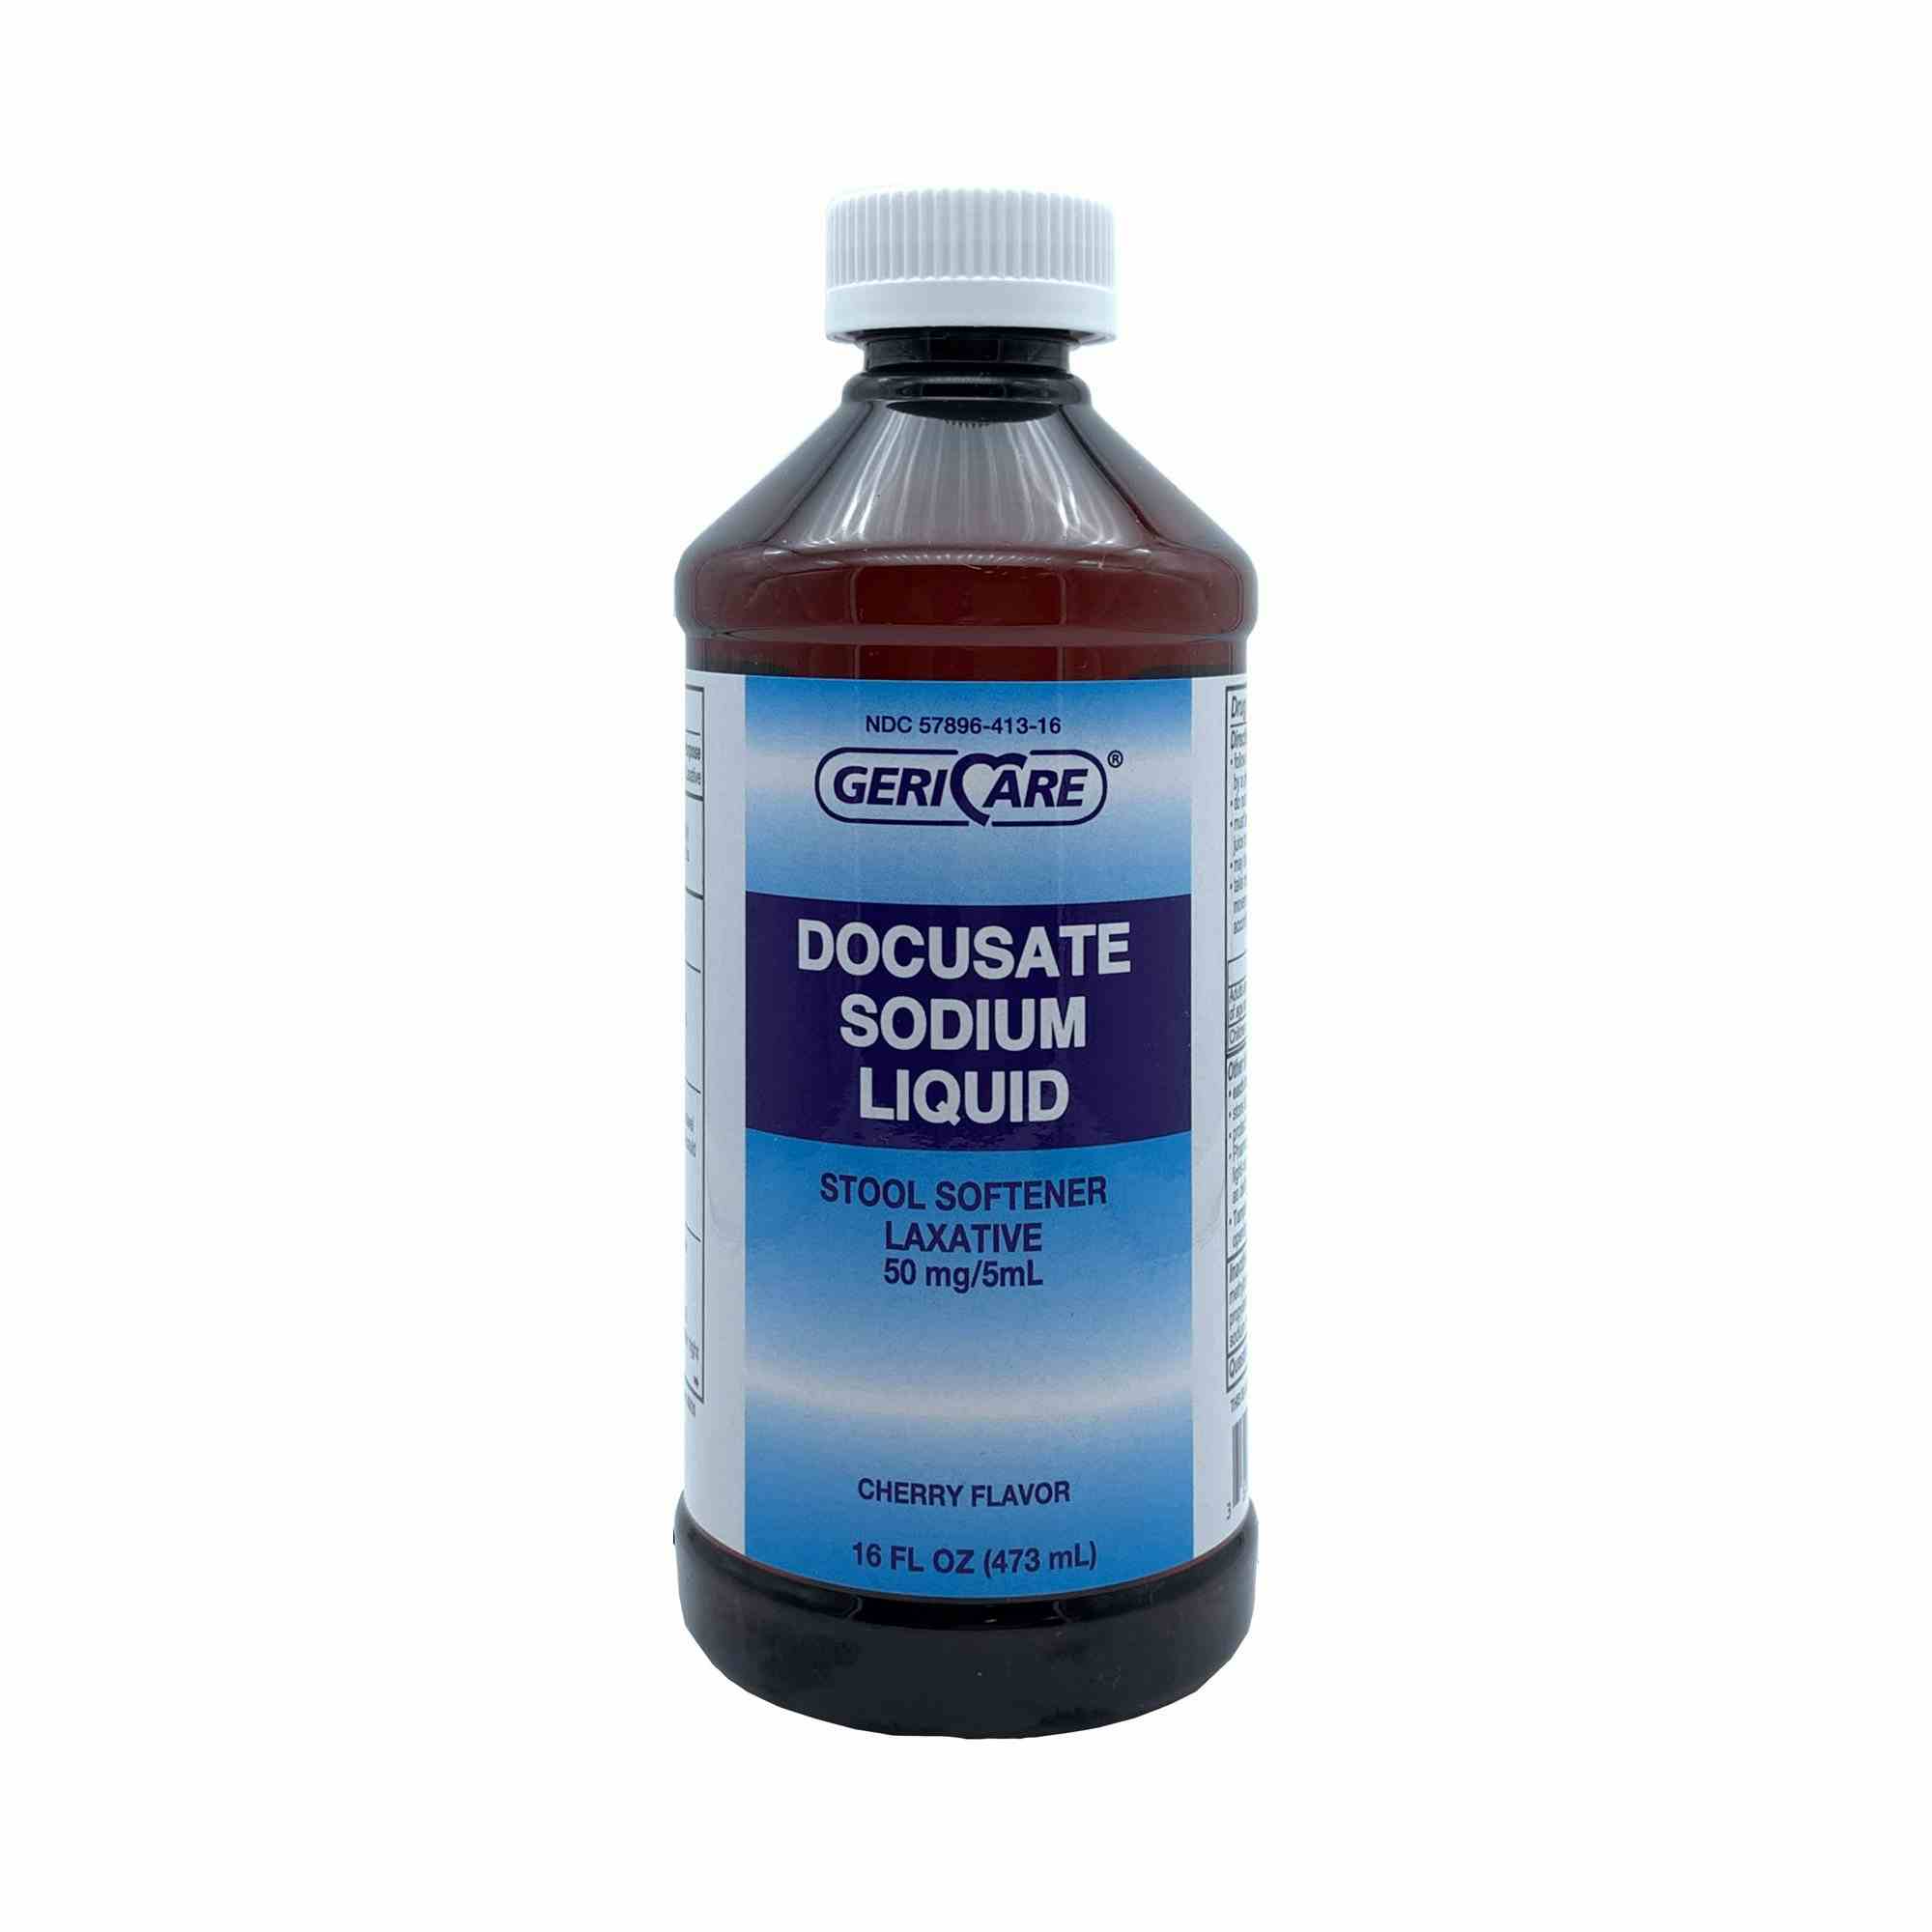 Geri-Care Docusate Sodium Liquid Stool Softener, Cherry Flavor, 16 oz., Q402-16-GCP, 1 Bottle